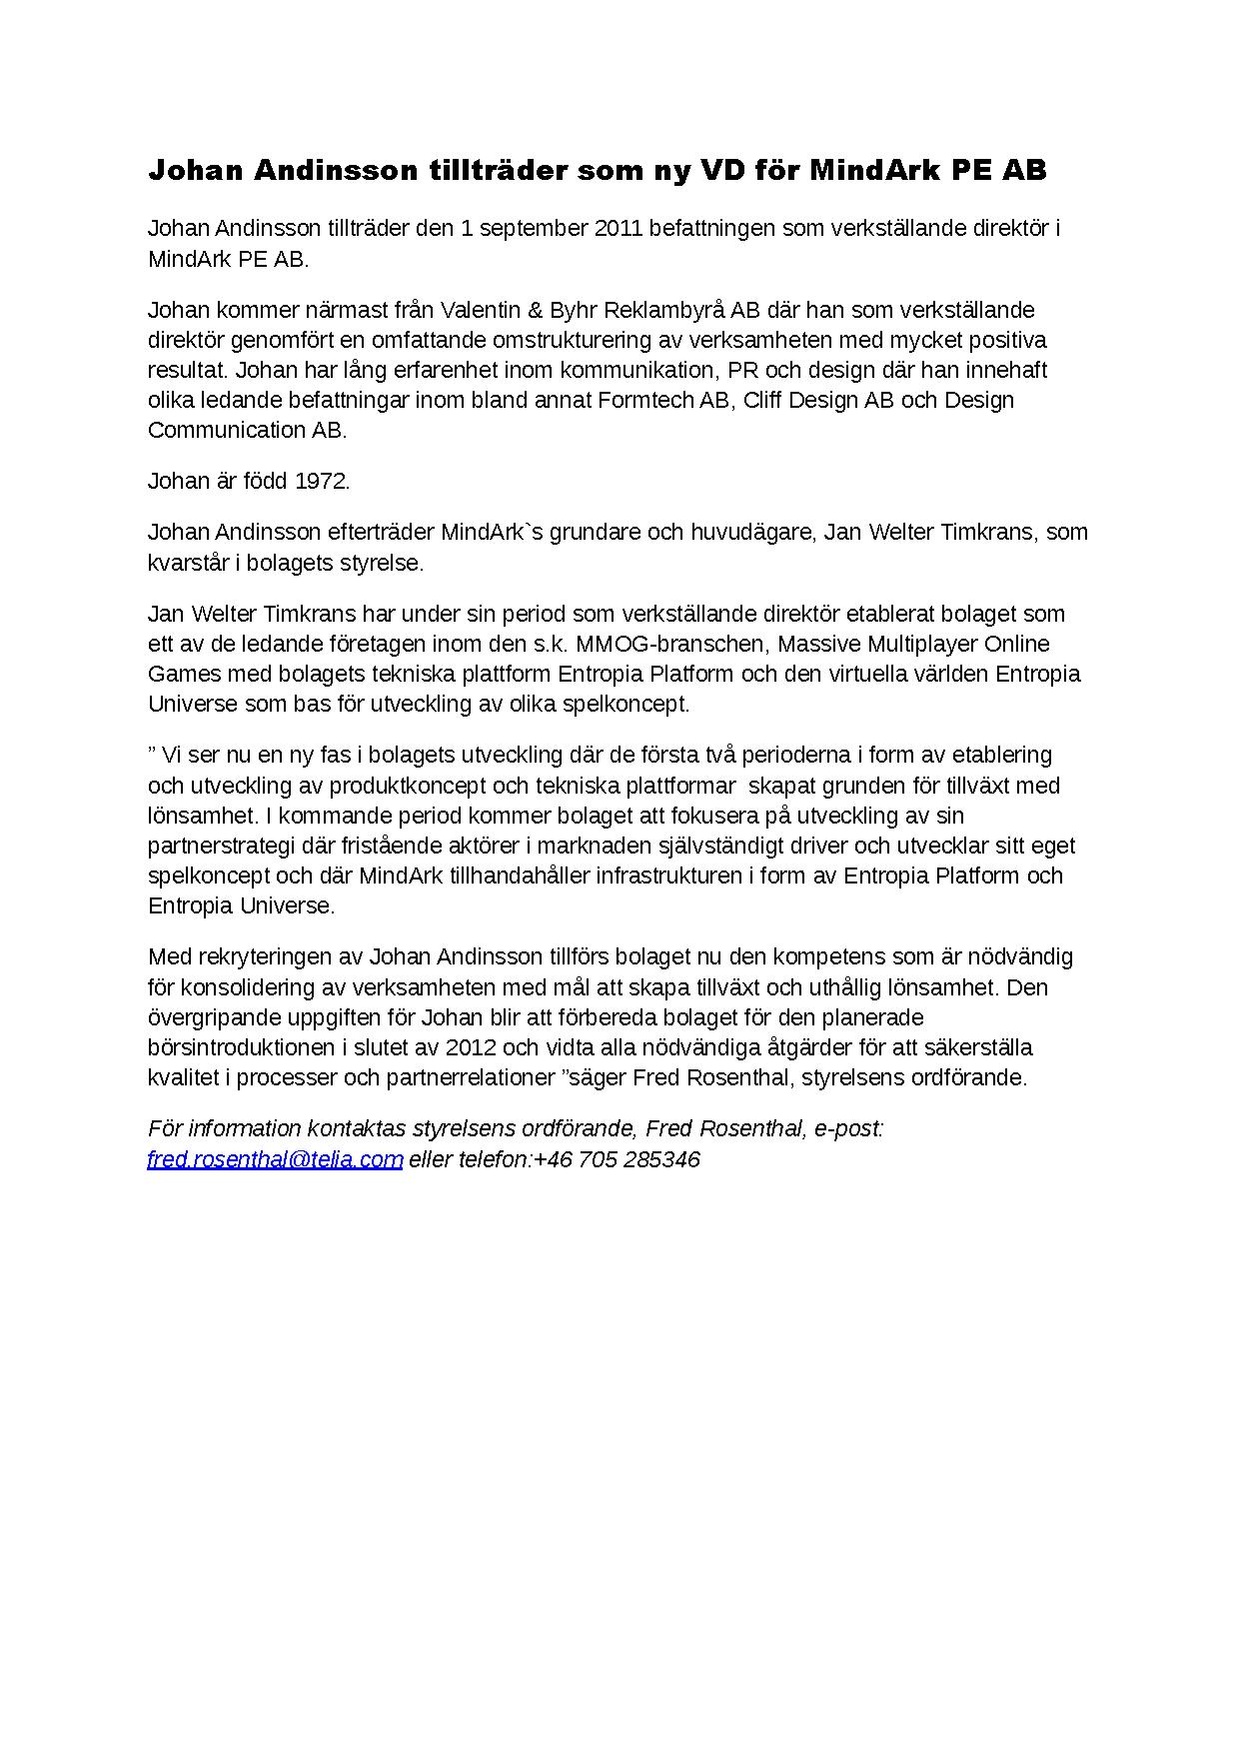 Press Release - Johan Andinsson tillträder som ny VD för MindArk PE AB.pdf